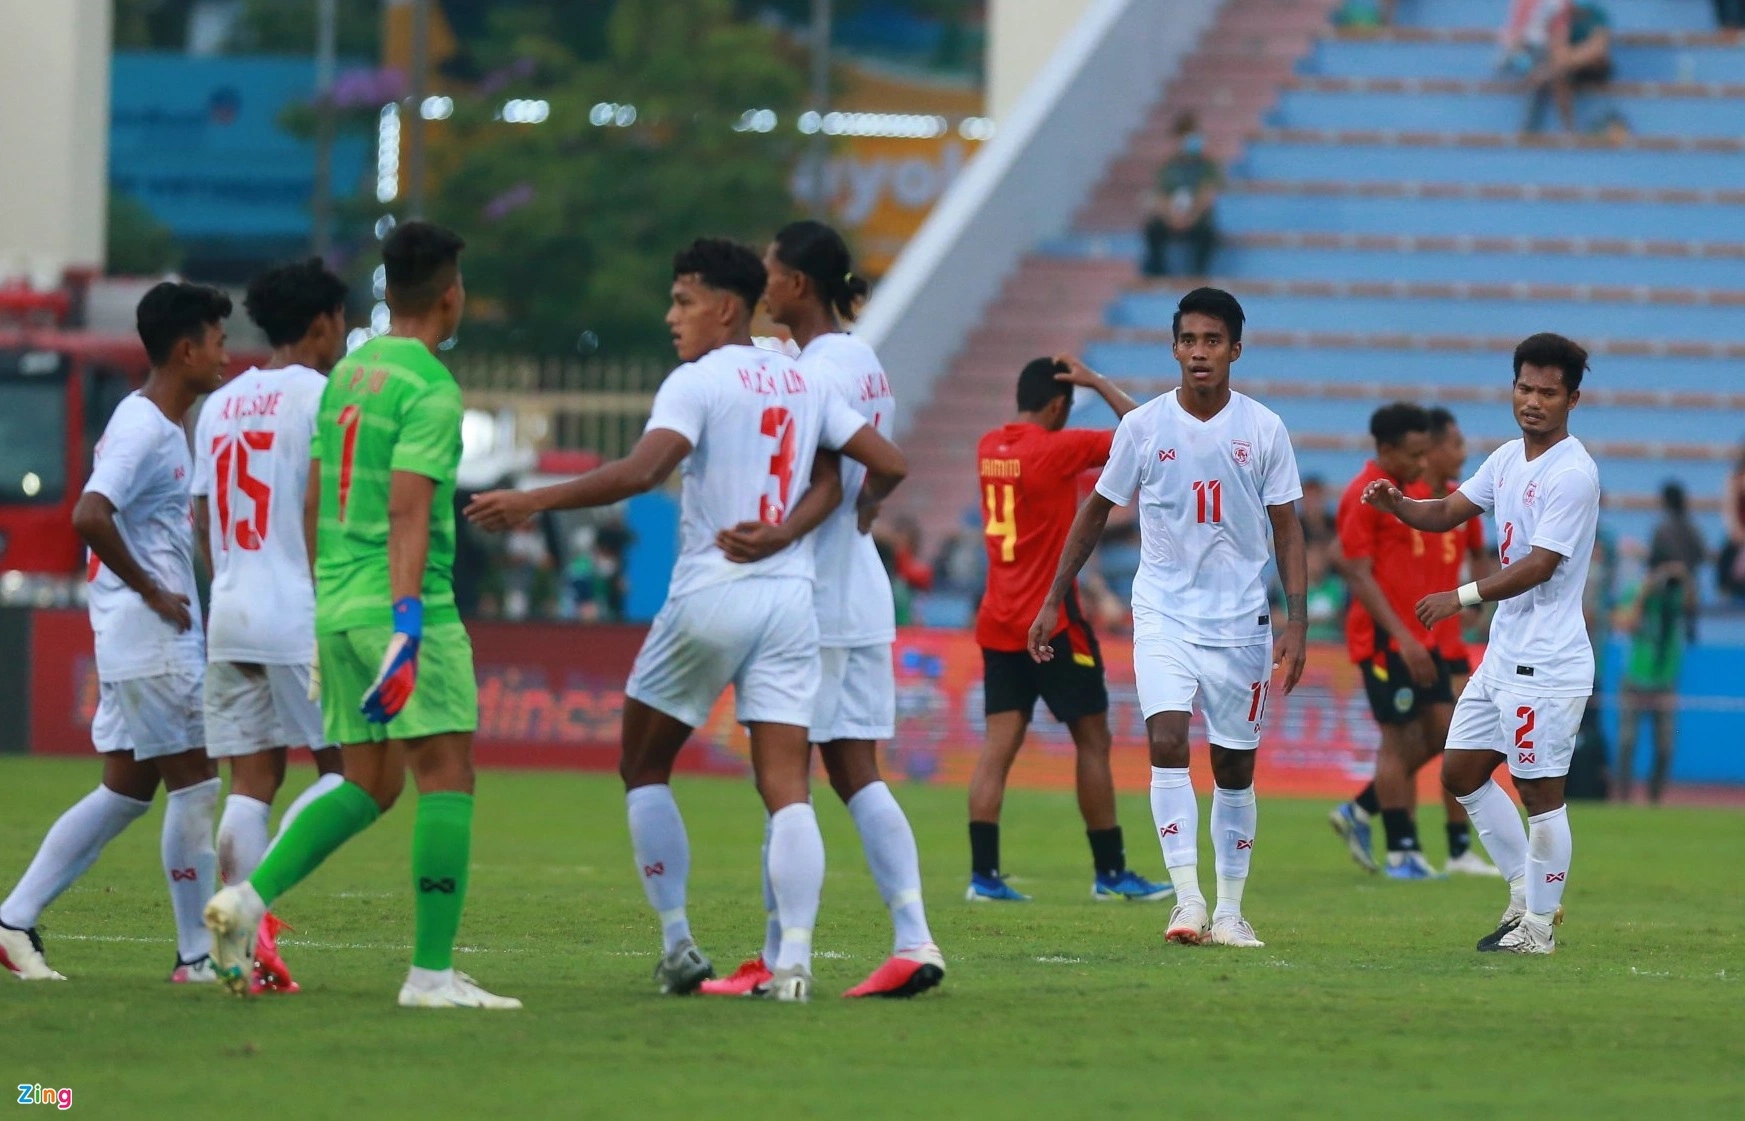 U23 Timor Leste Nhận Thất Bại ở Phút 90+5 6277c473e88f1.jpeg